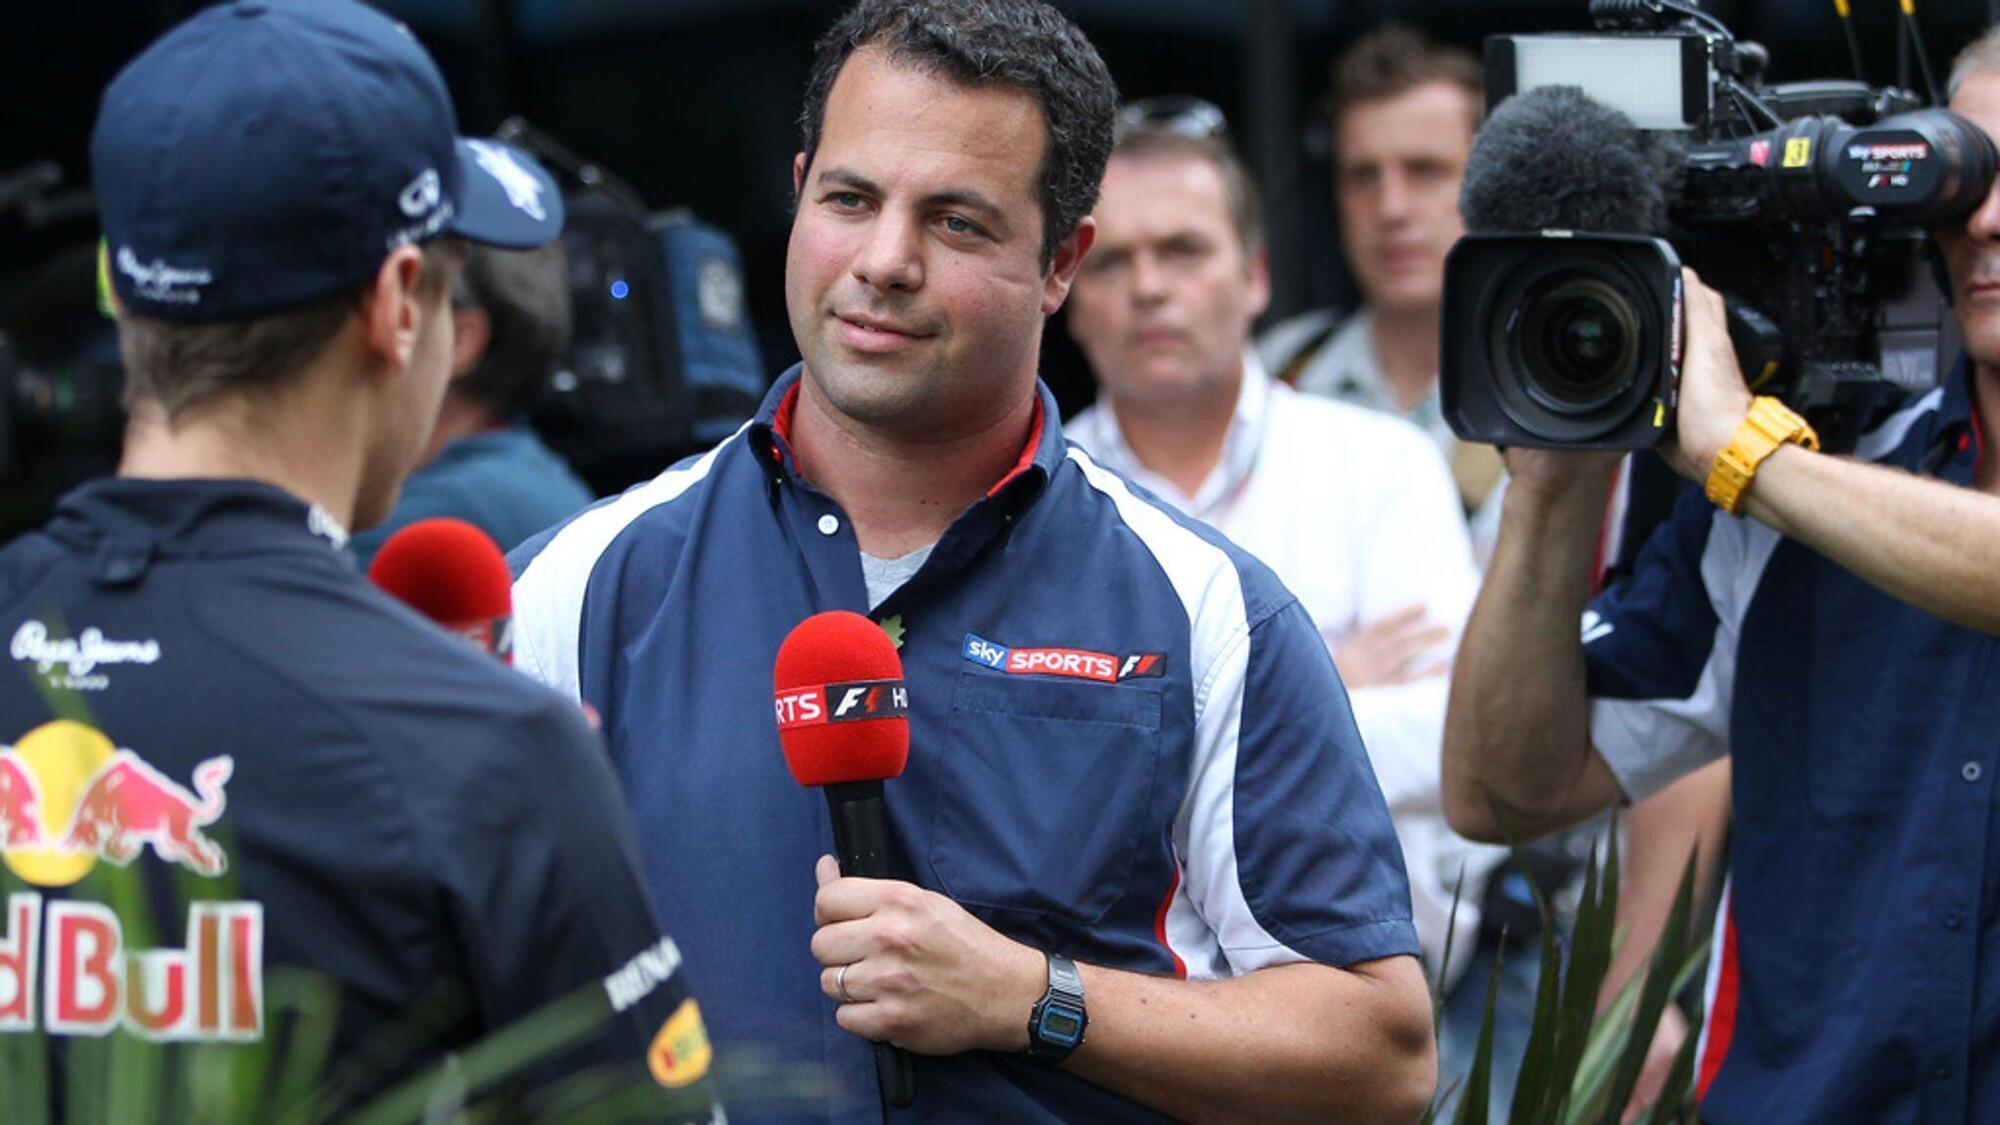  Ted Kravitz, il giornalista che ha portato Red Bull alla decisione di boicottare Sky Sport